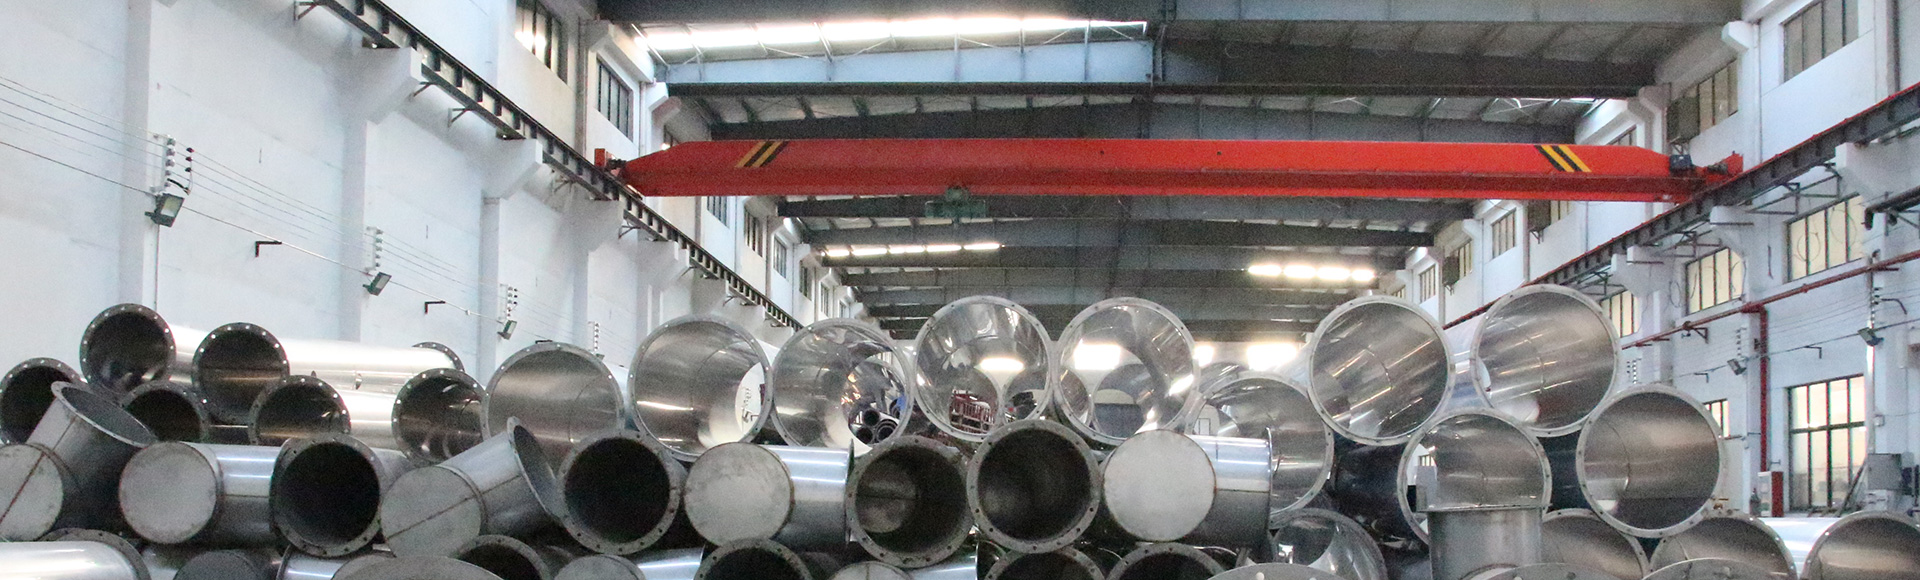 不锈钢风管,不锈钢焊接风管厂家-无锡隽发暖通设备有限公司